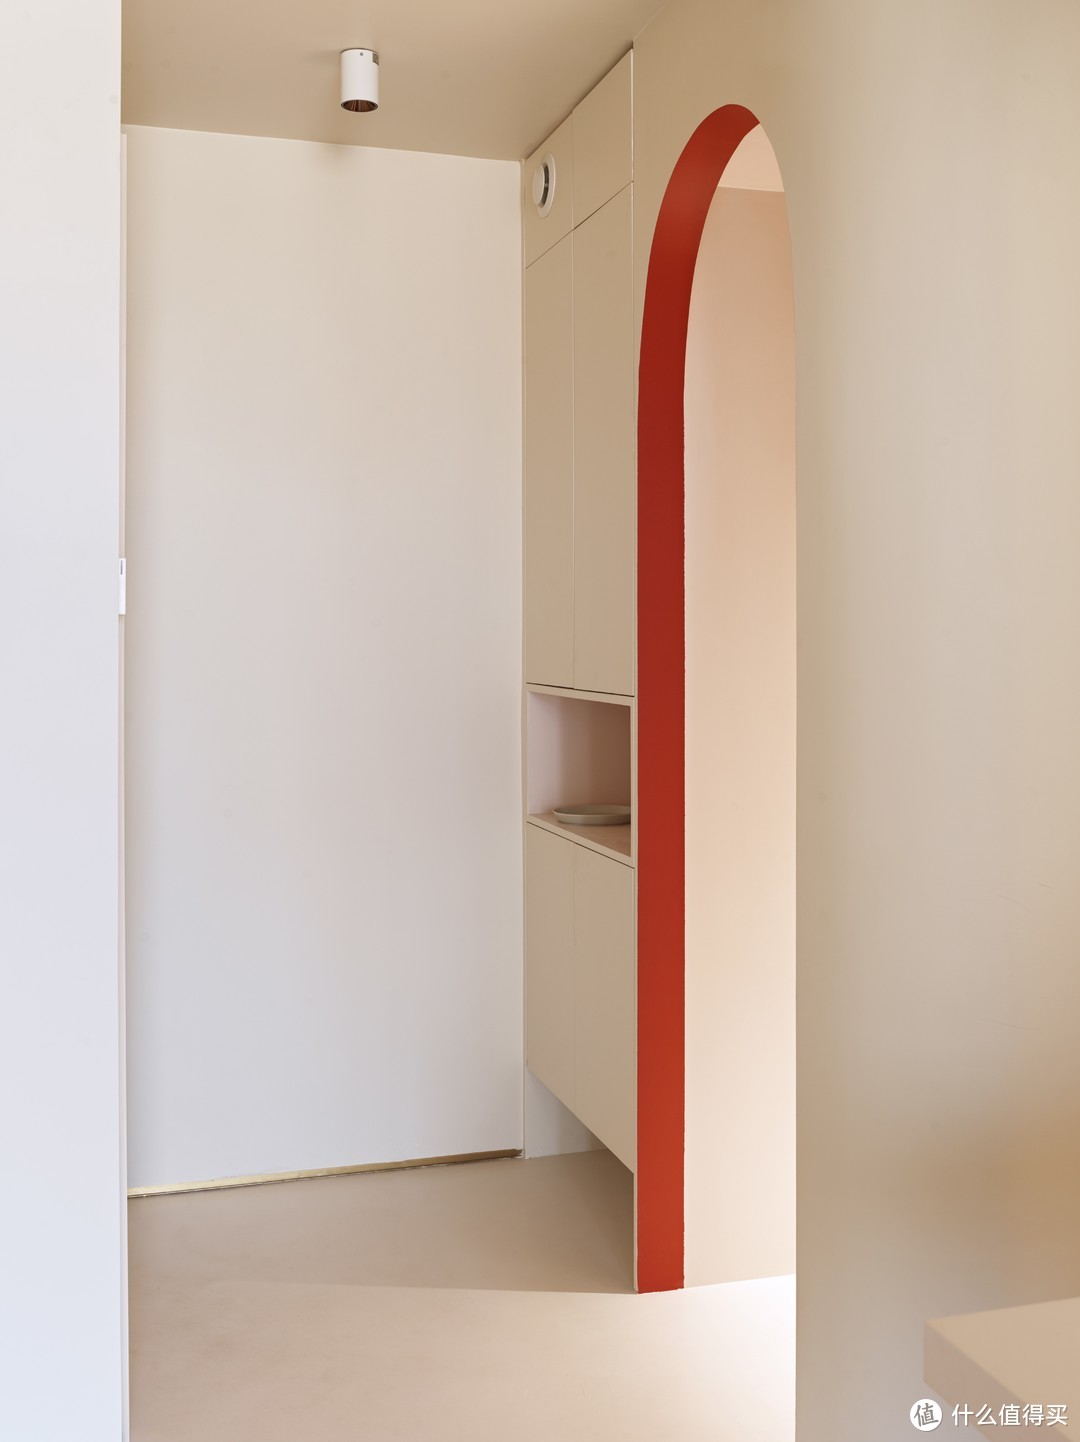 新的玄关设置四段式玄关柜（这名字我们起的），拱门可直接进入卫生间的洗漱区域。